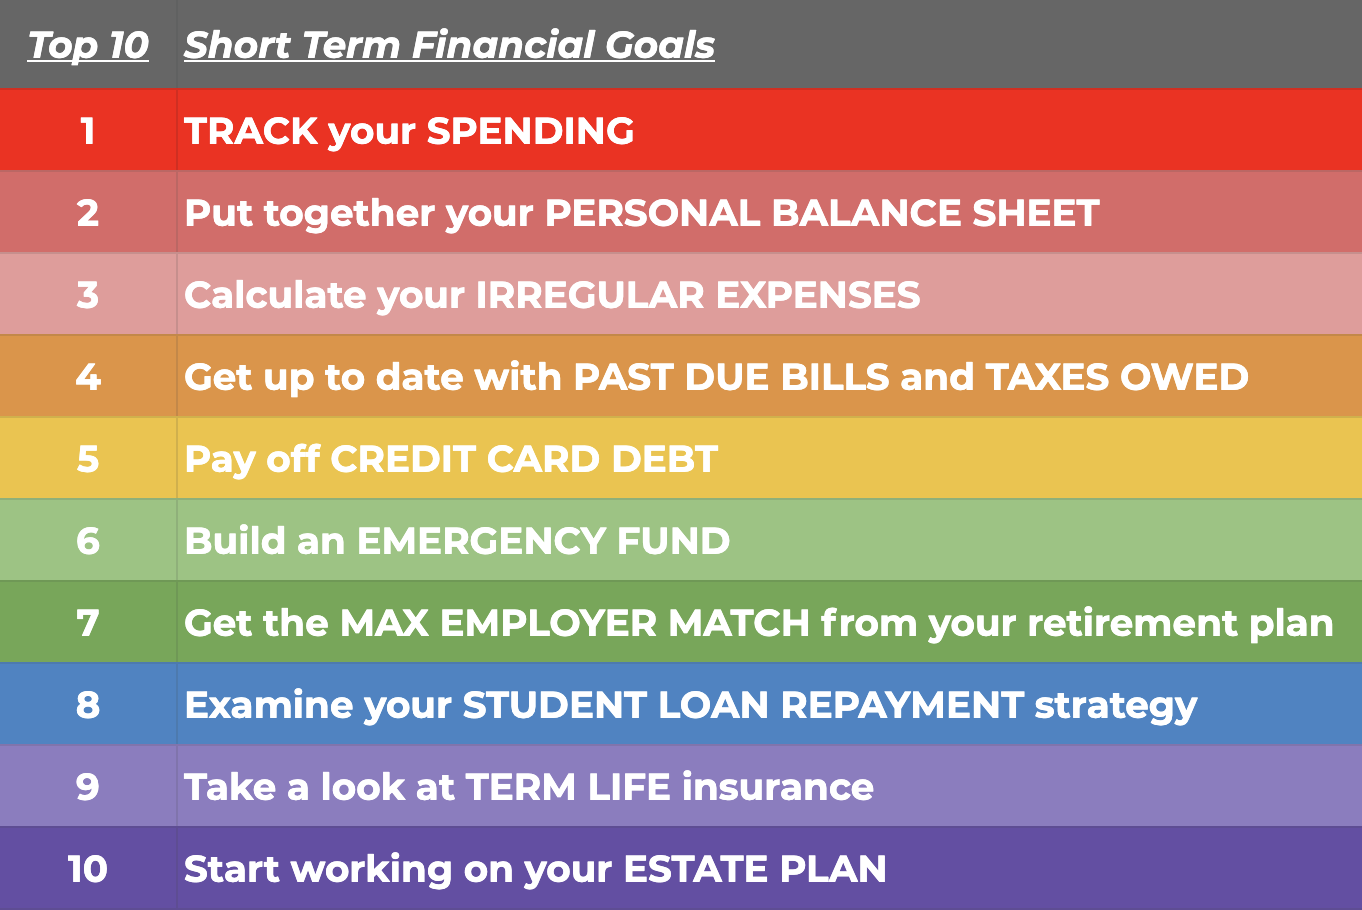 Short term financial goals